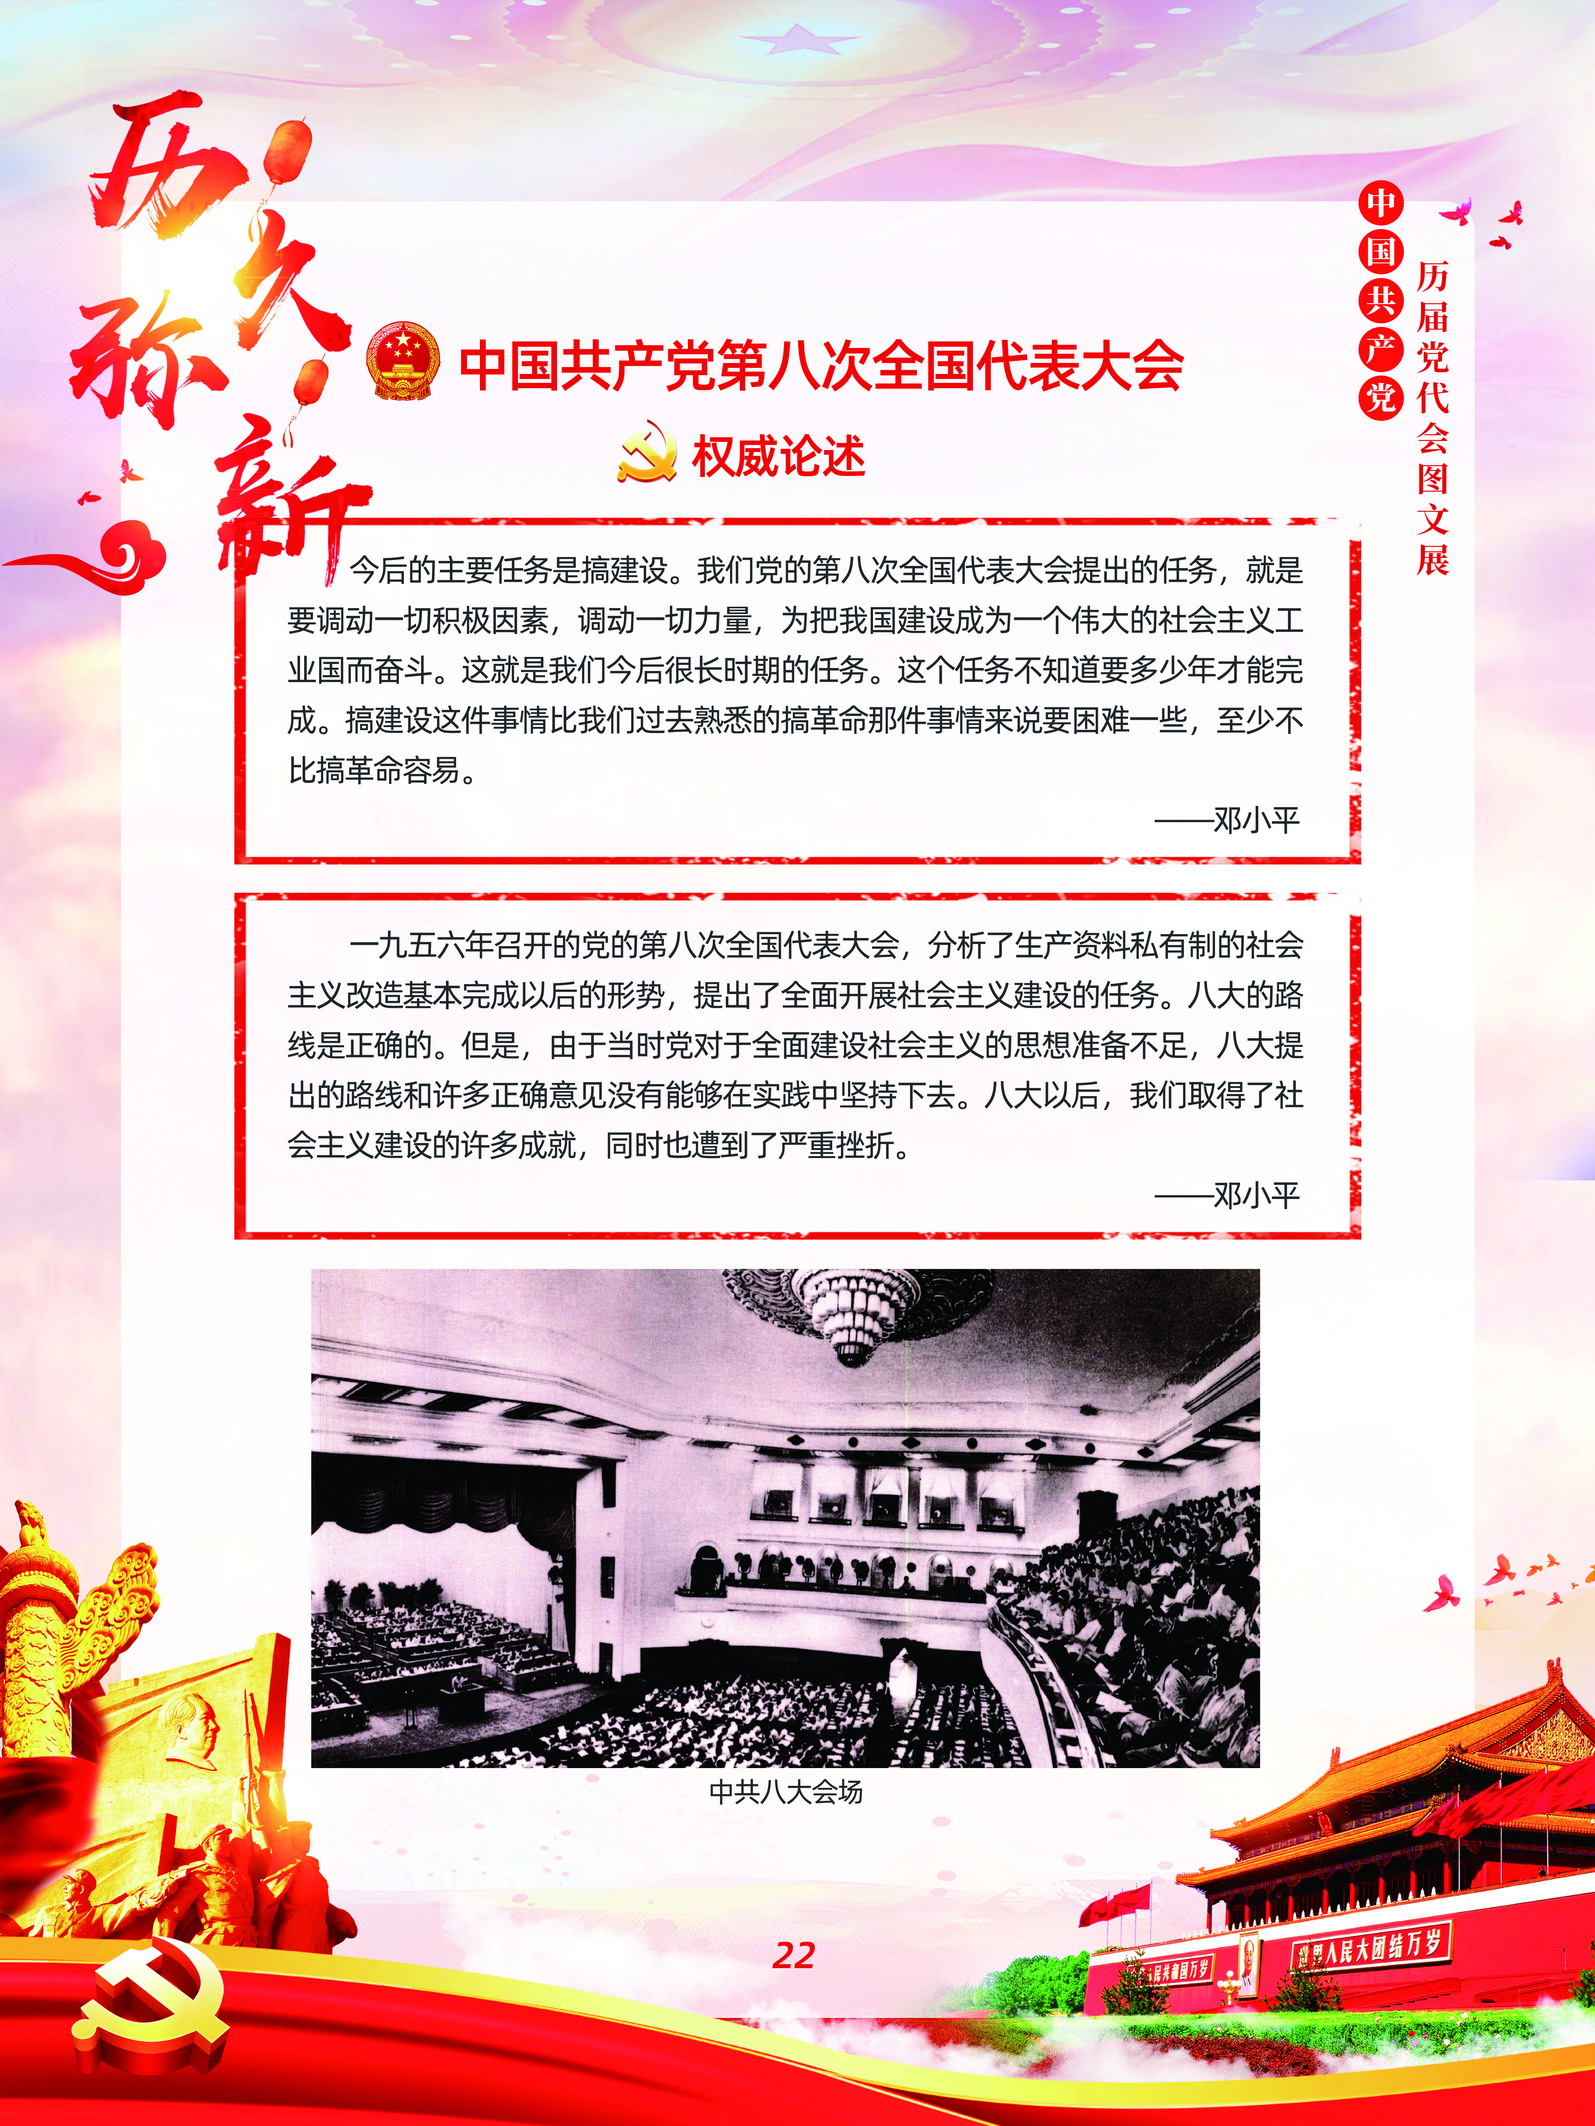 中国共产党历届党代会图文展_图21